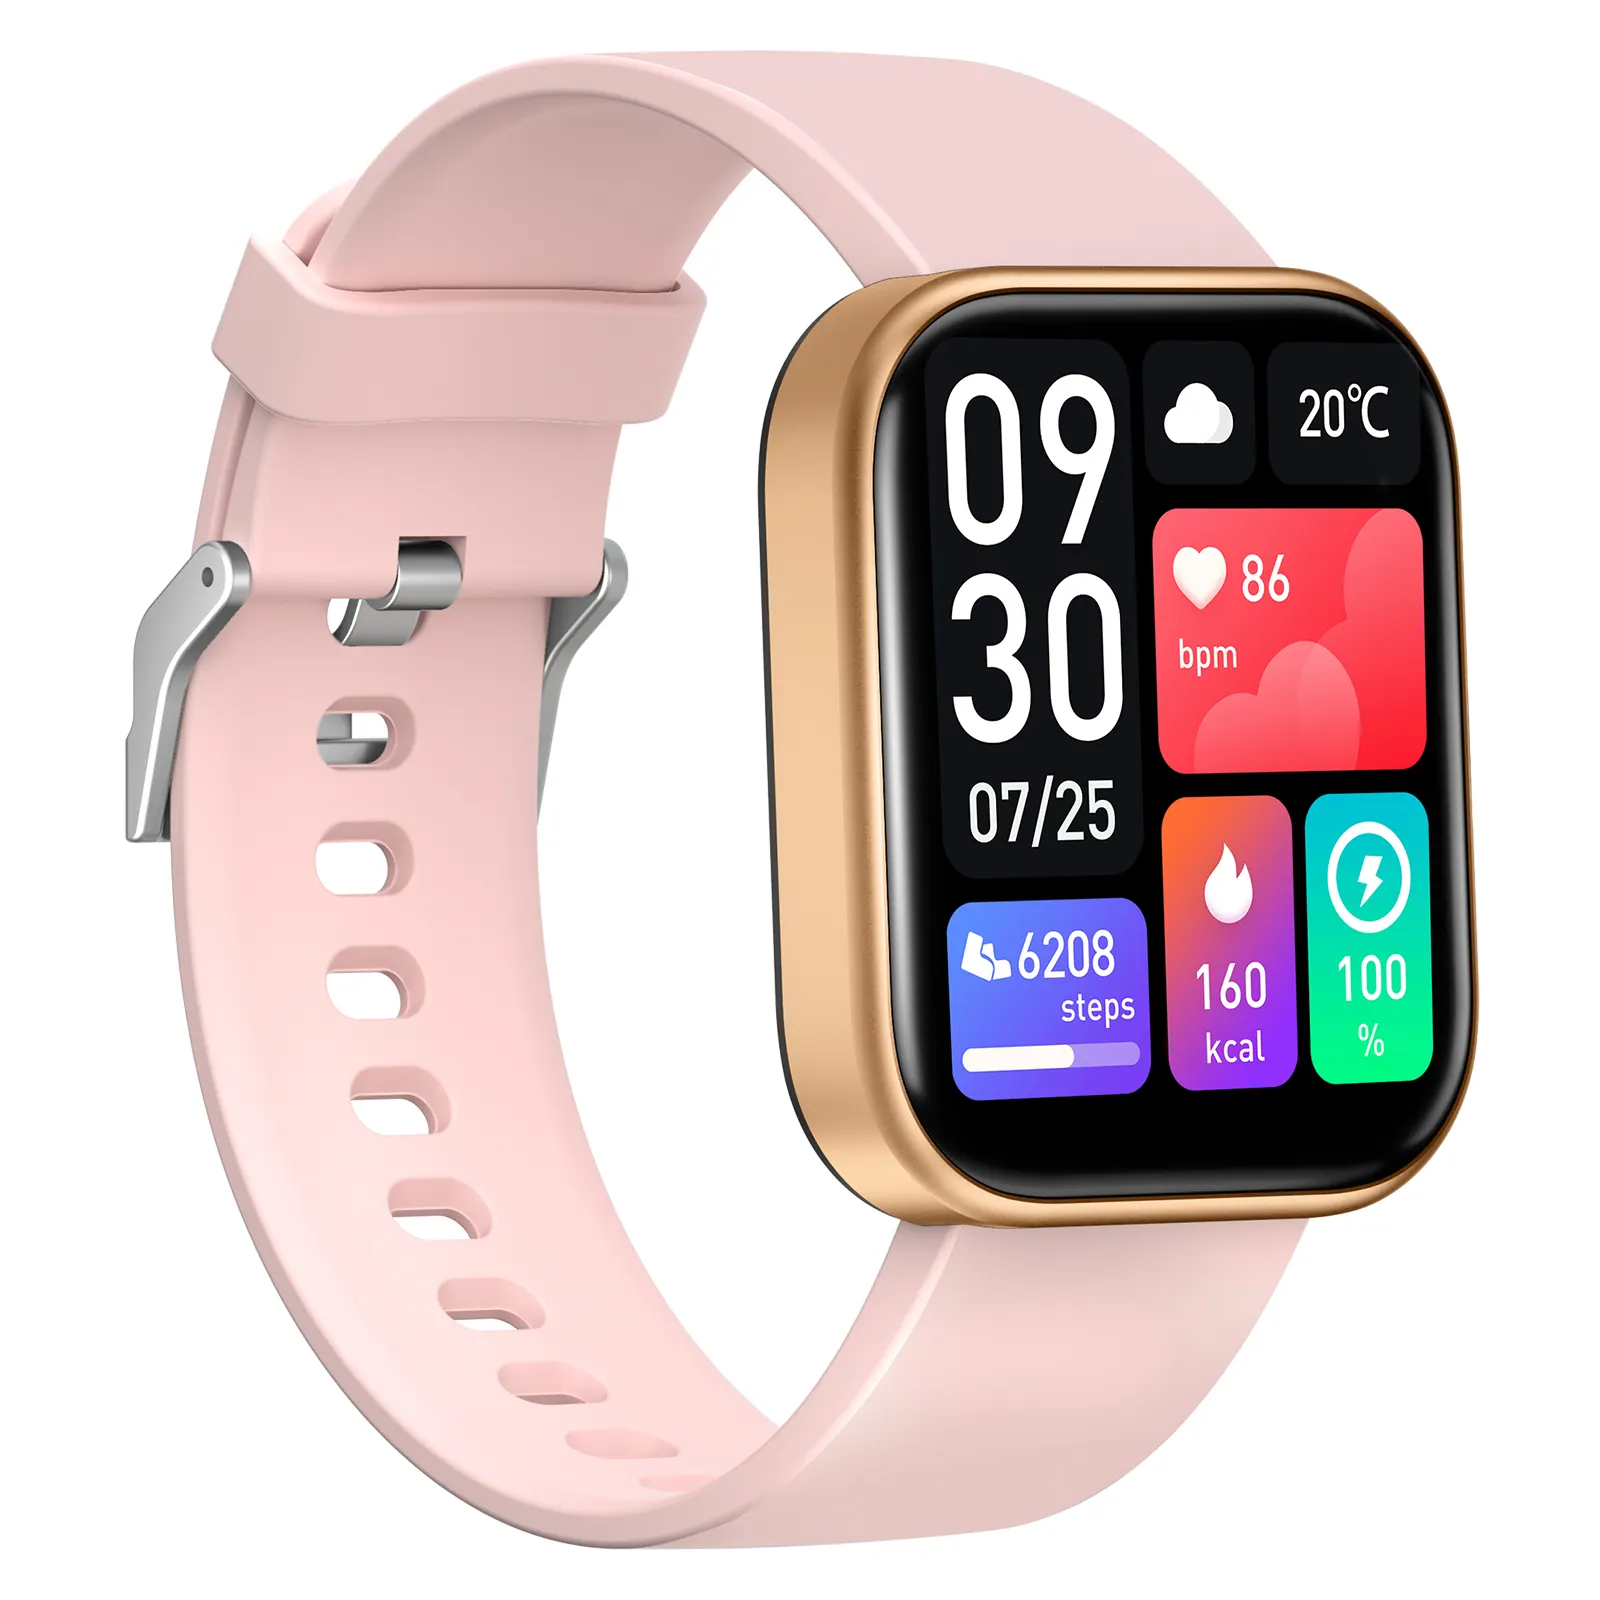 Hot Sale Gesundheit Smartwatch HD-Bildschirm Bluetooth-Anruf Reloj Inteli gente 100 Sport modi Fitness-Tracker SmartWatch Für Android IOS